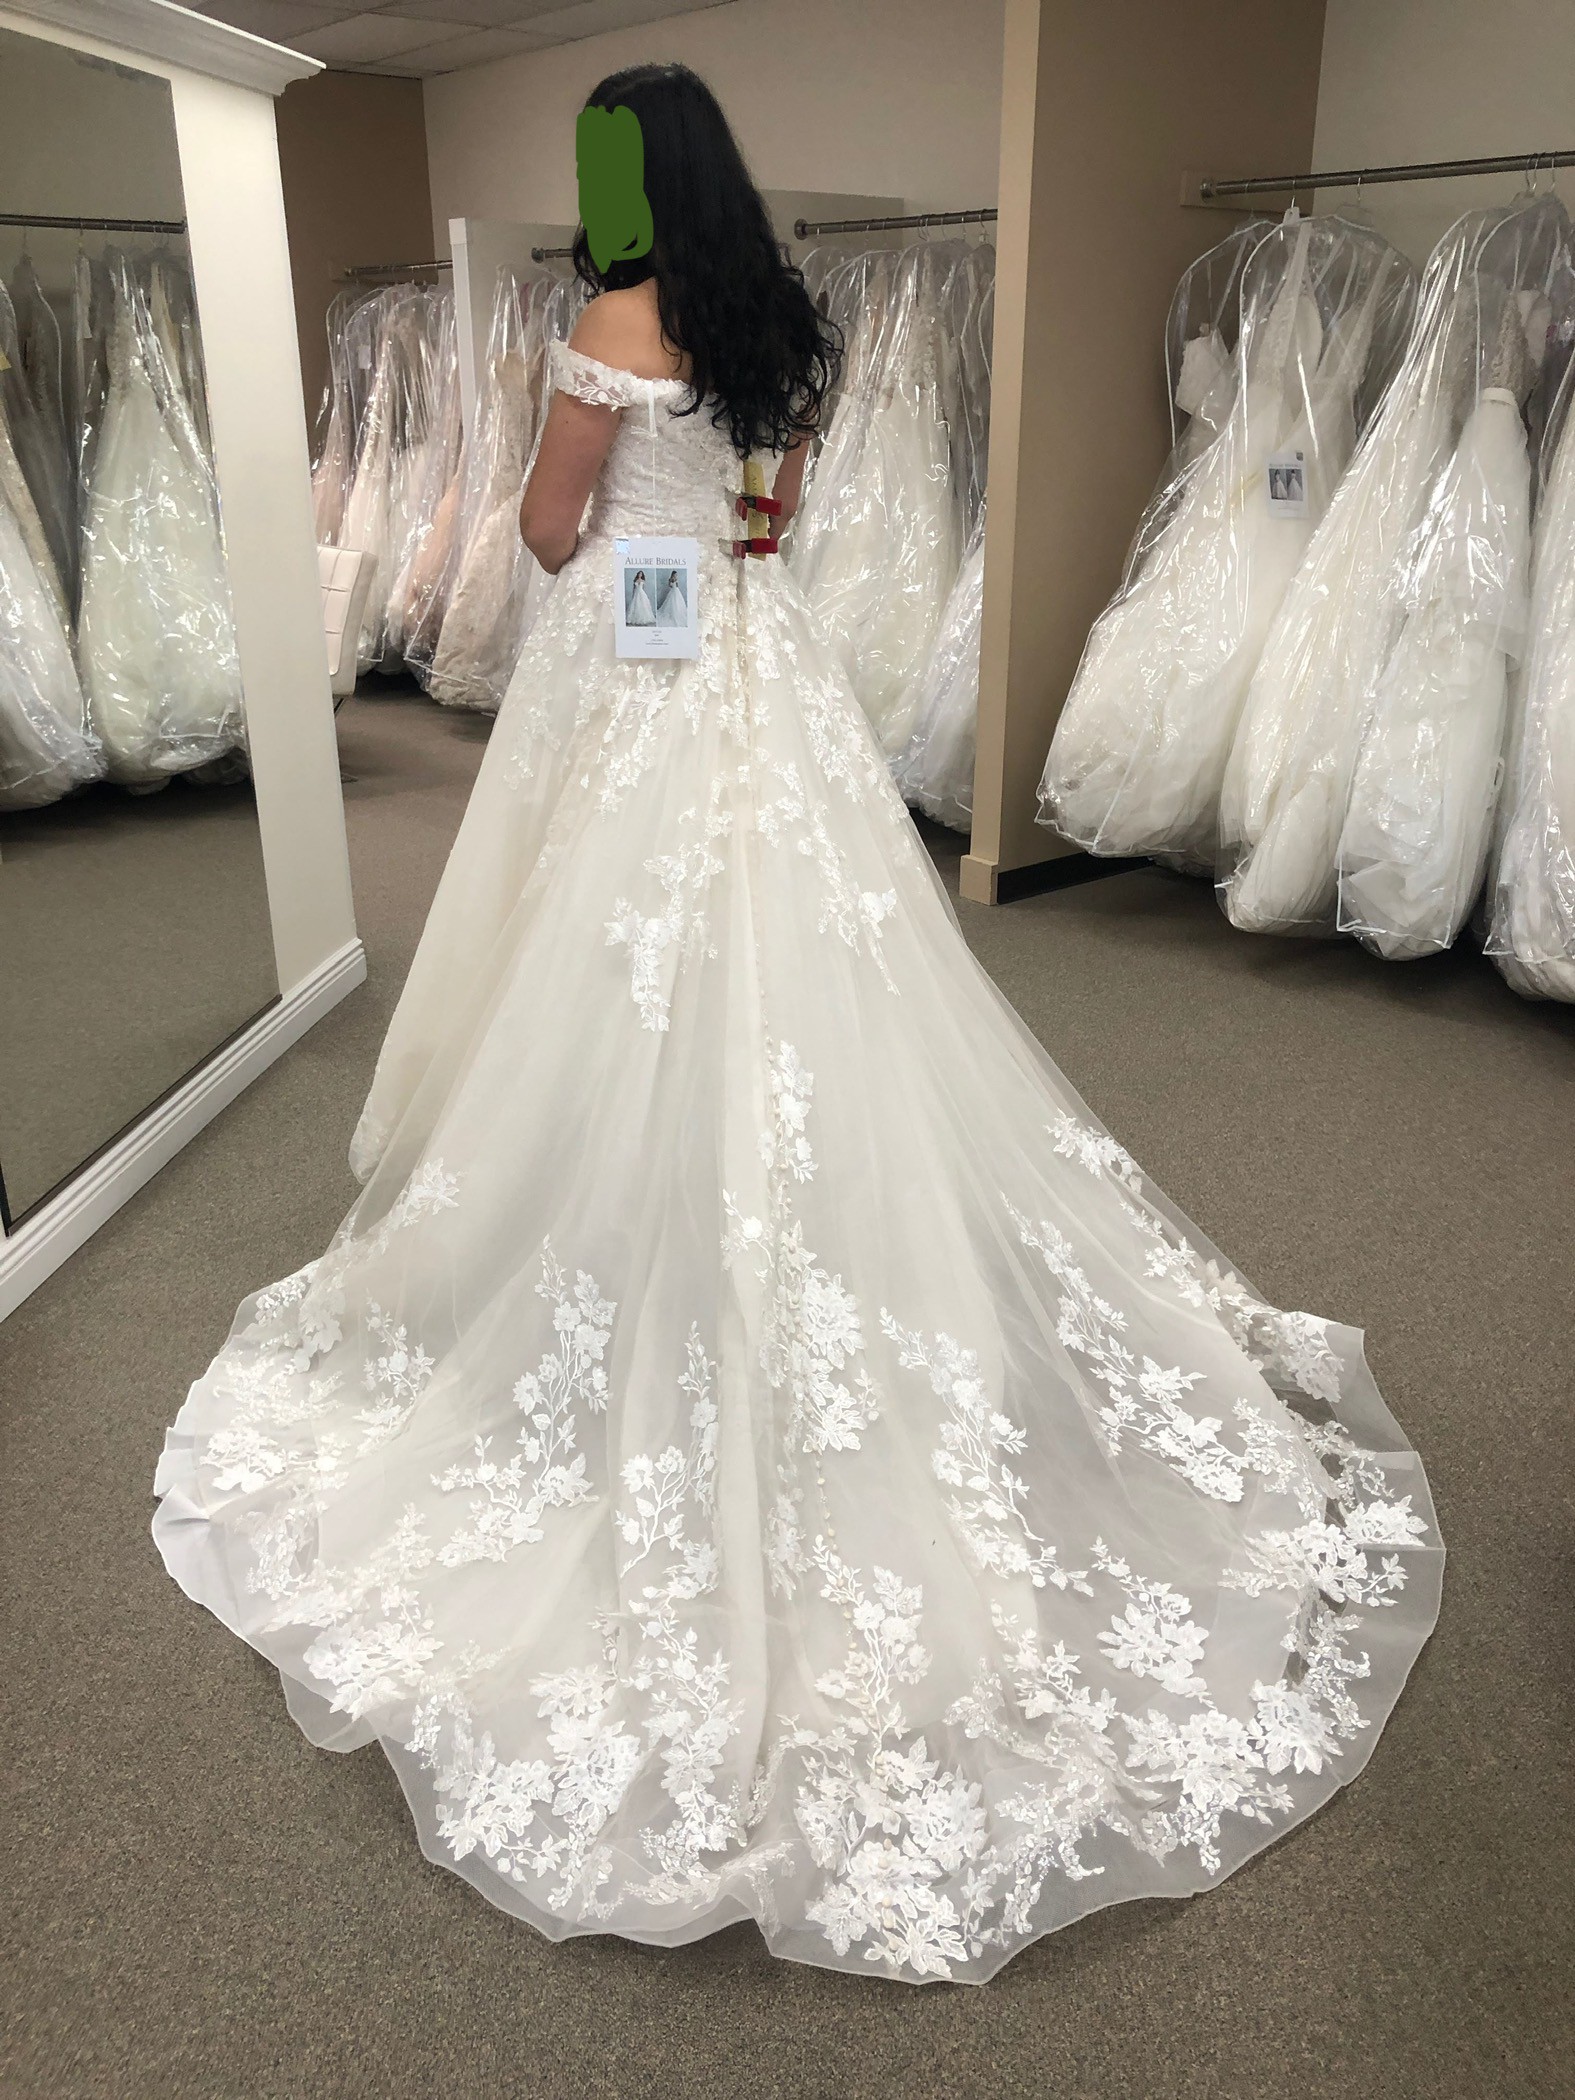 Allure 9807 Wedding Dress for sale in Sacramento  Designer Sample, Size  10, $1470 — Olive & Ivory